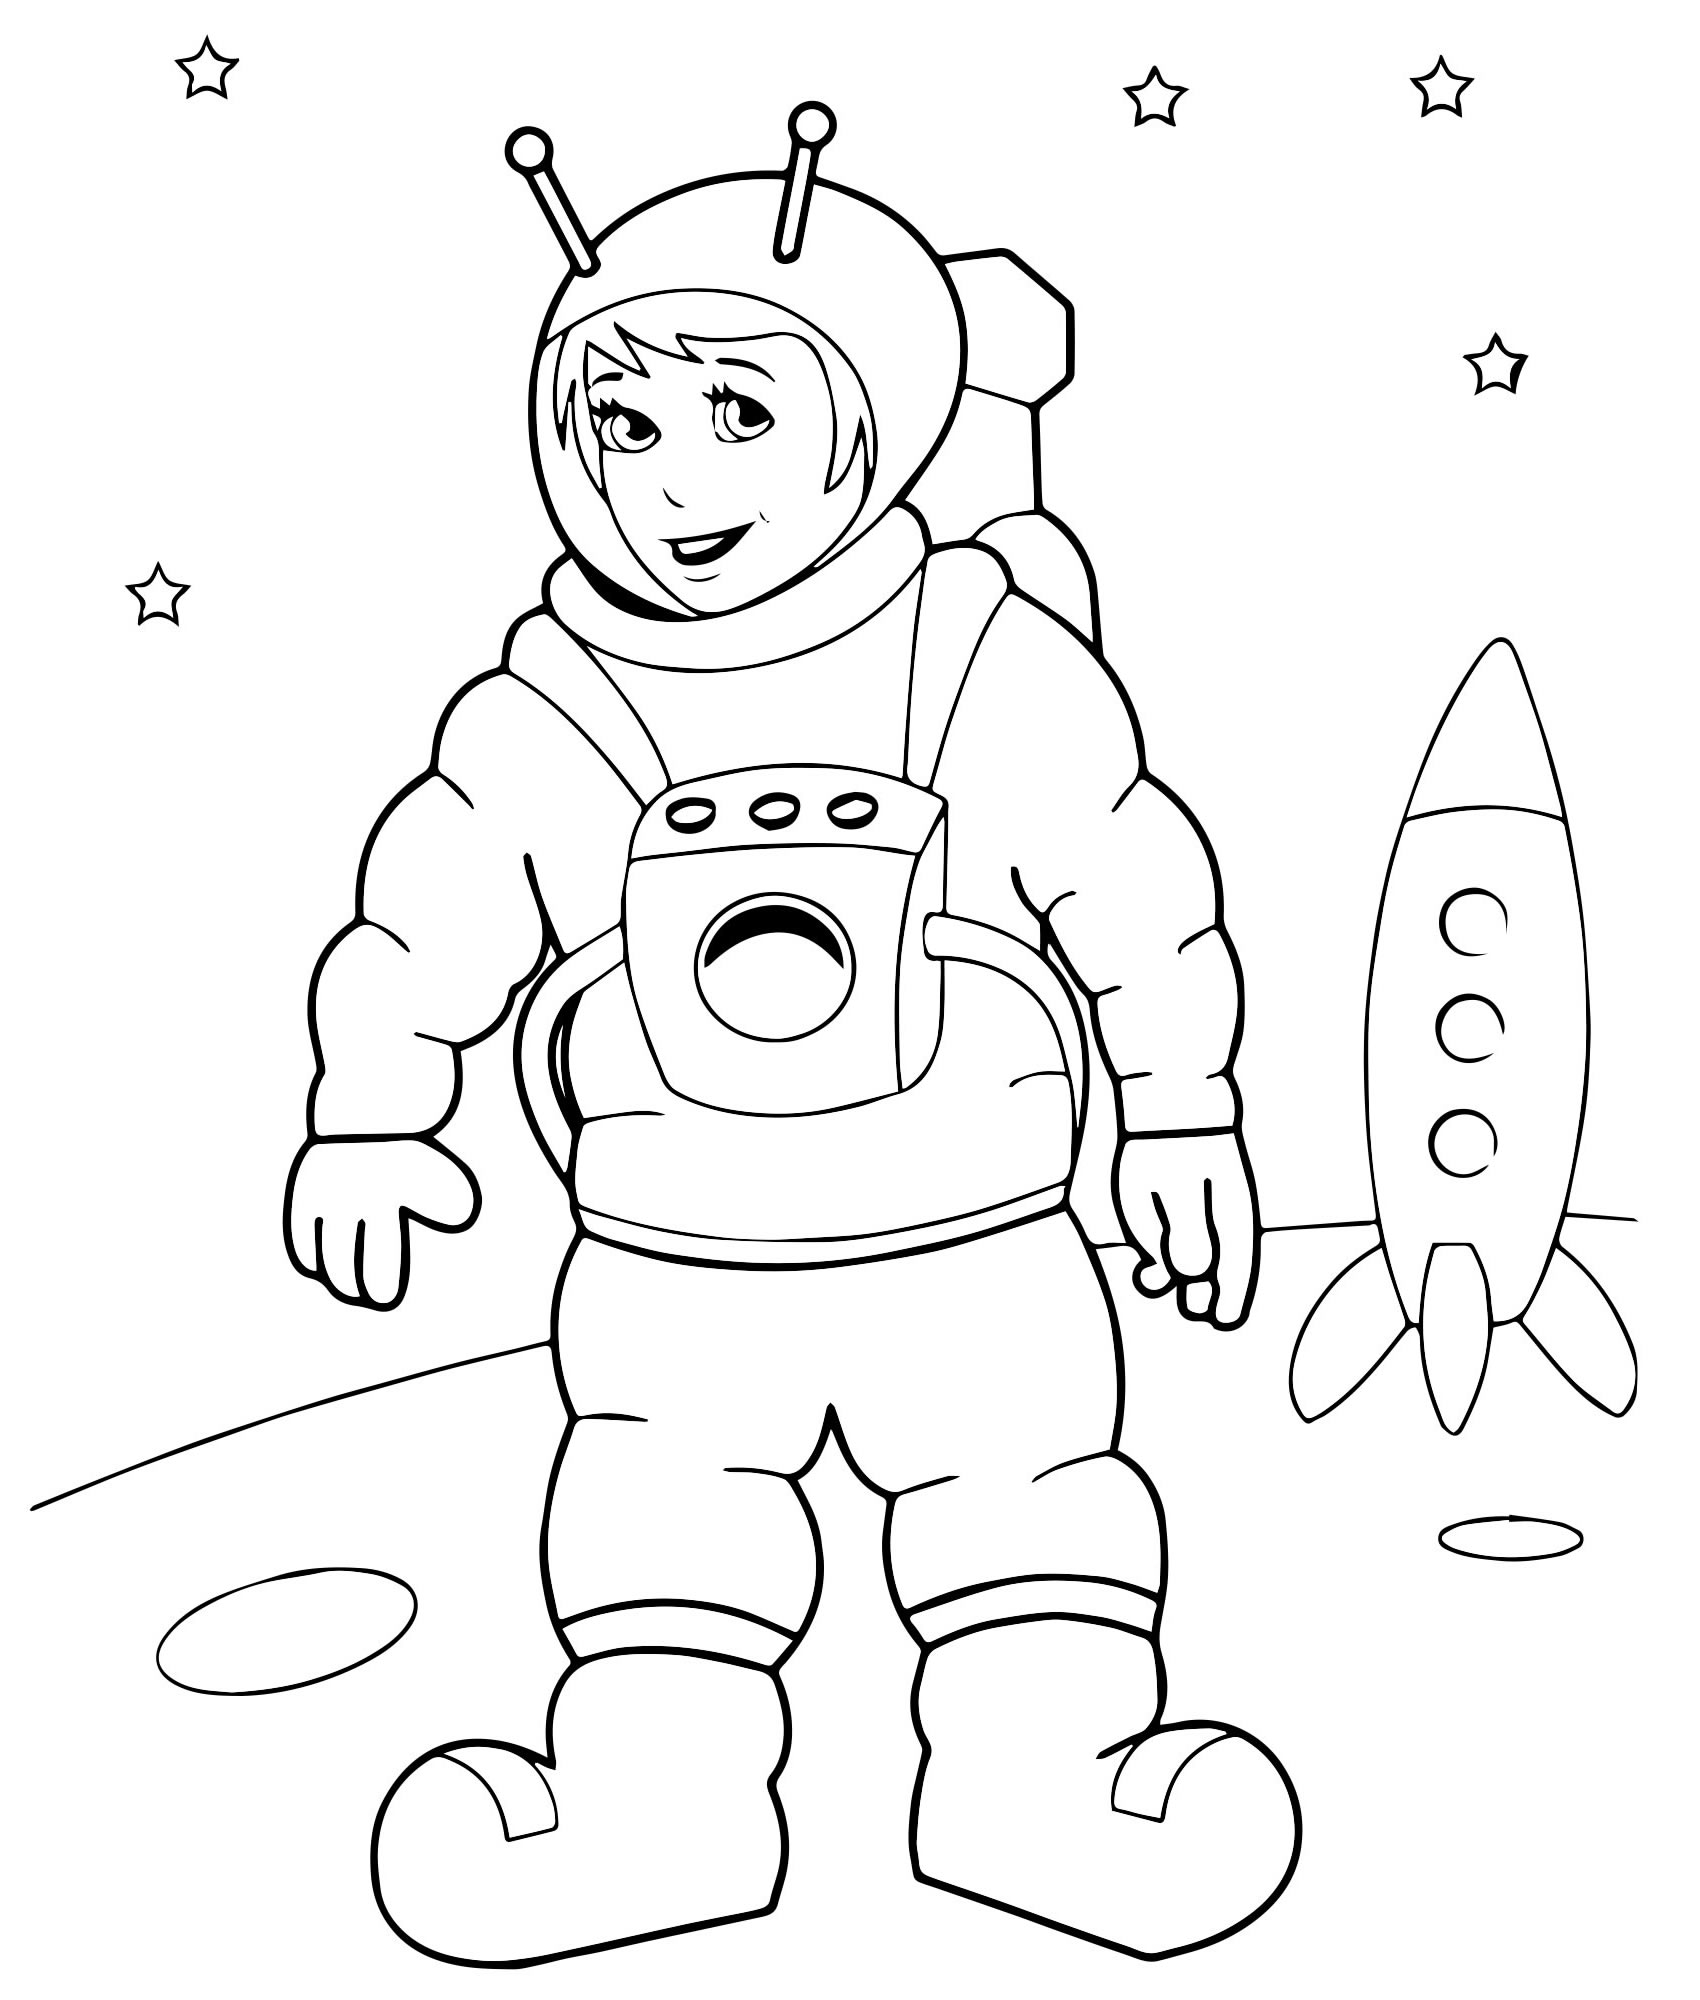 Детские раскраски ко дню космонавтики. Космонавт раскраска для детей. Космос раскраска для детей. Космонавтика раскраски для детей. Раскраска. В космосе.